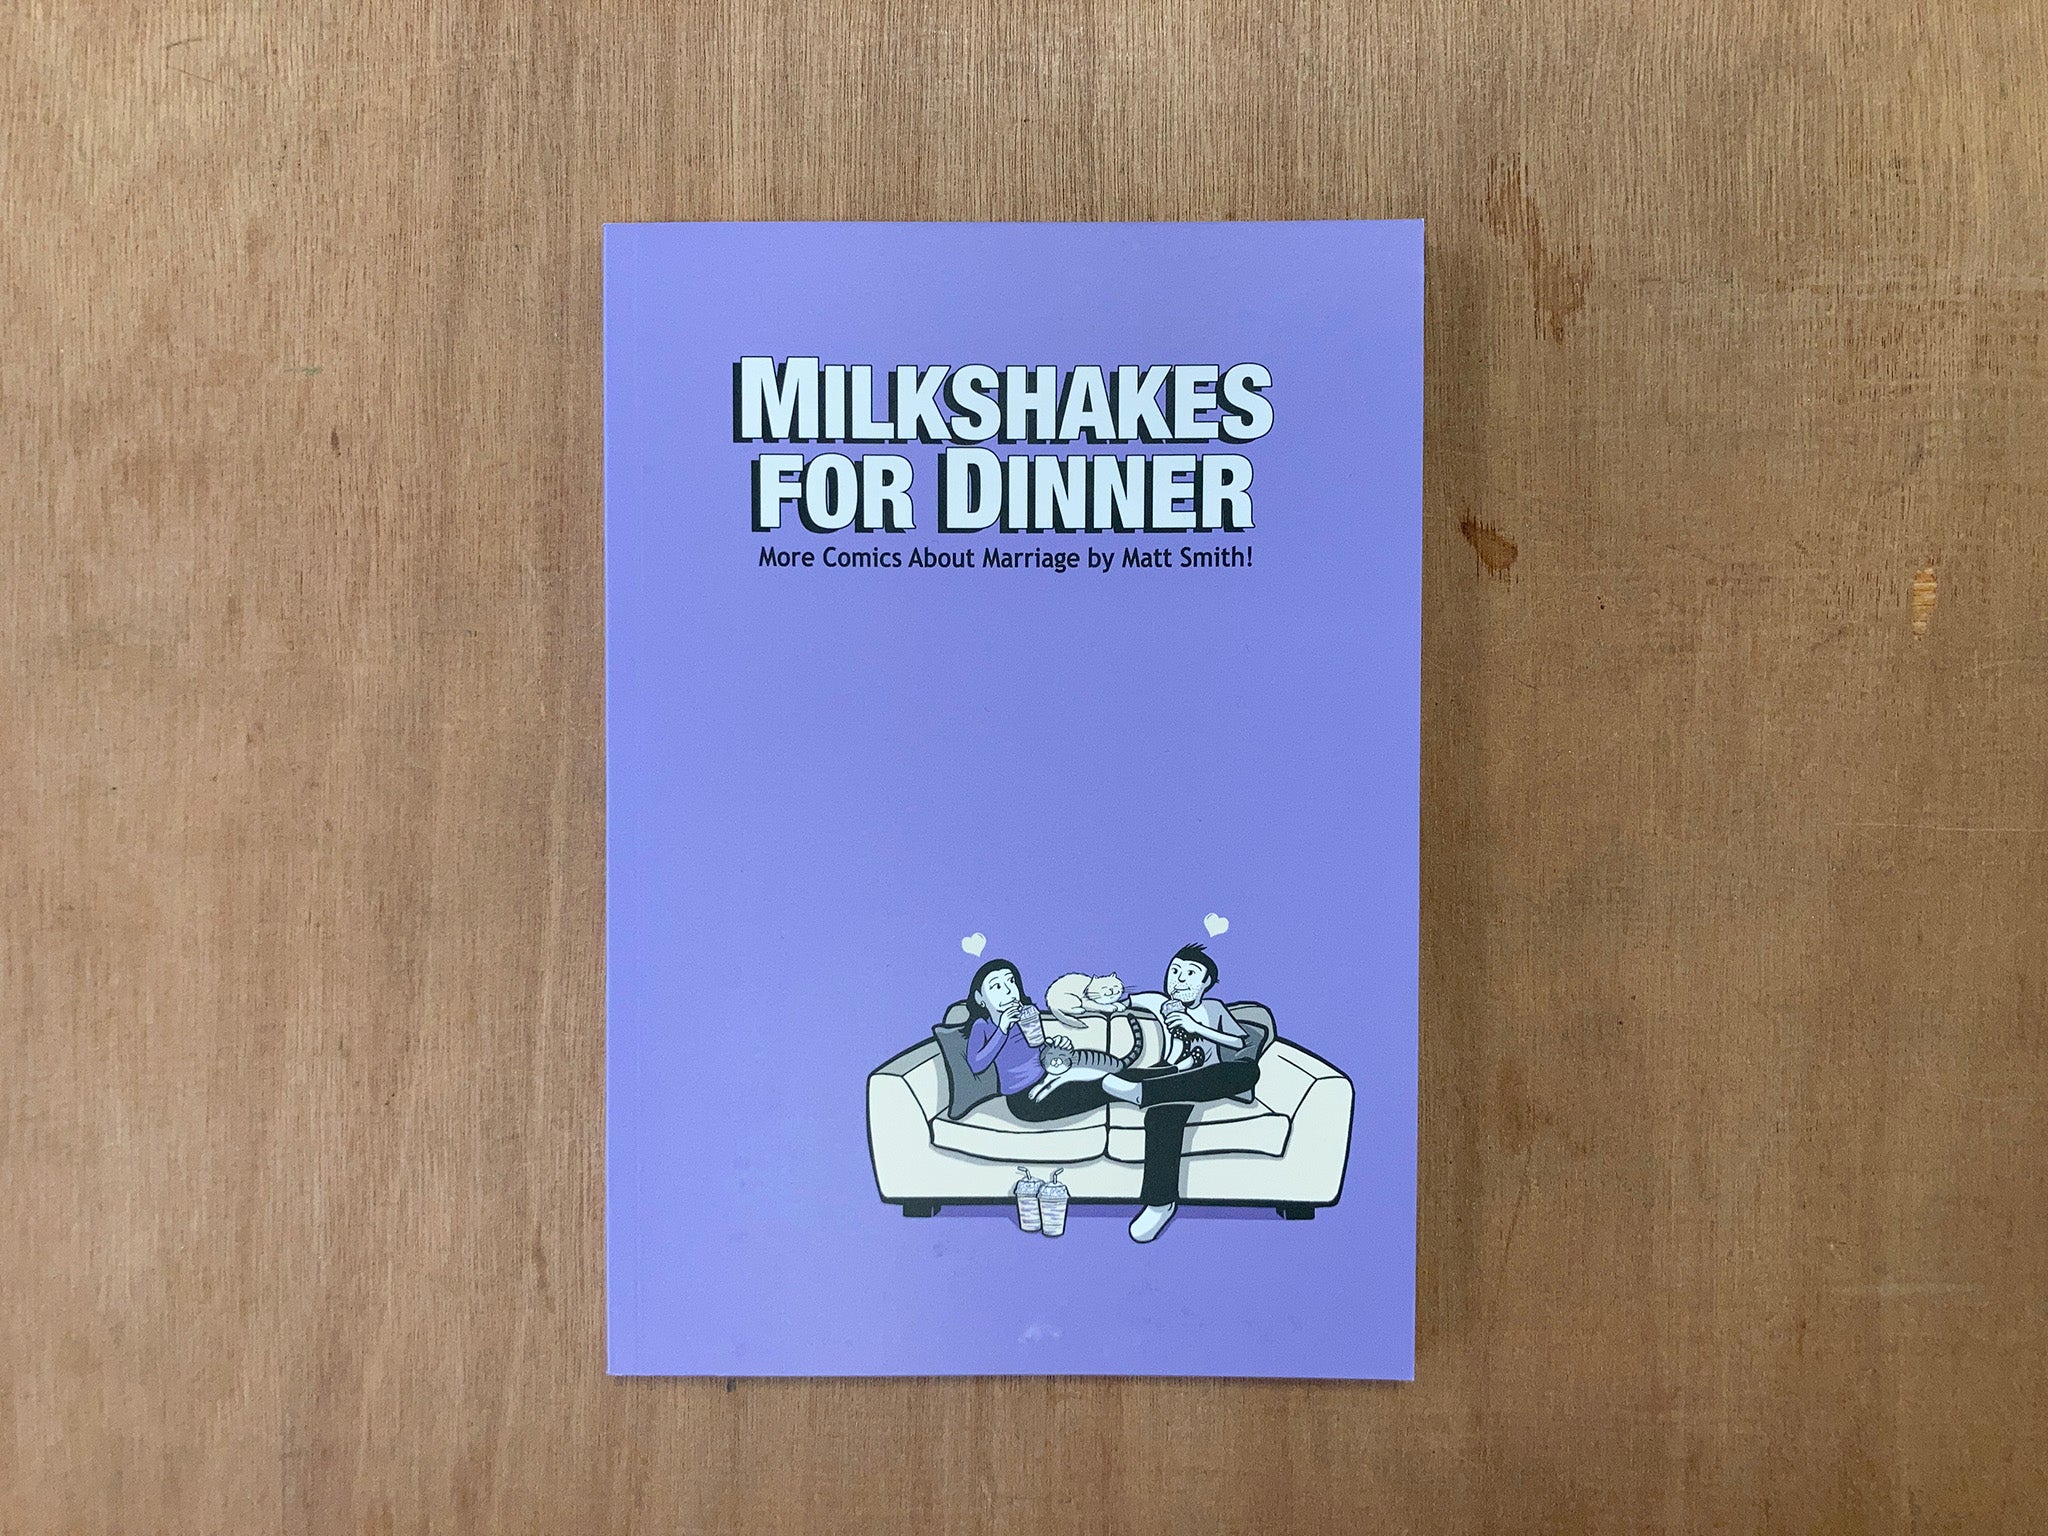 MILKSHAKES FOR DINNER by Matt Smith